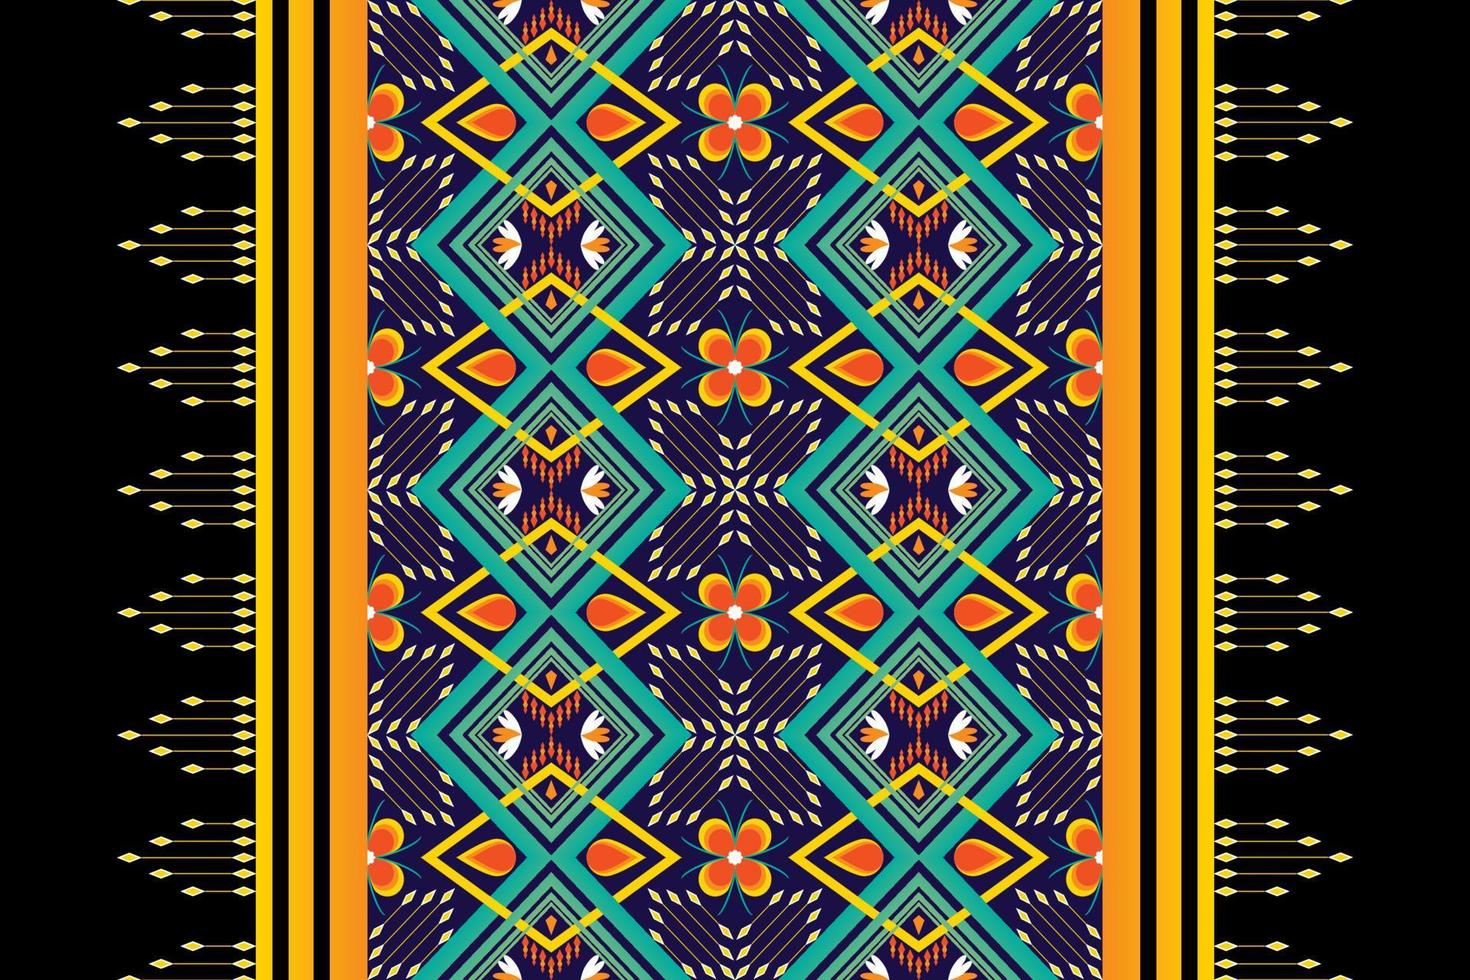 design de padrão étnico geométrico colorido sem costura para papel de parede, fundo, tecido, cortina, tapete, roupas e embrulho. vetor